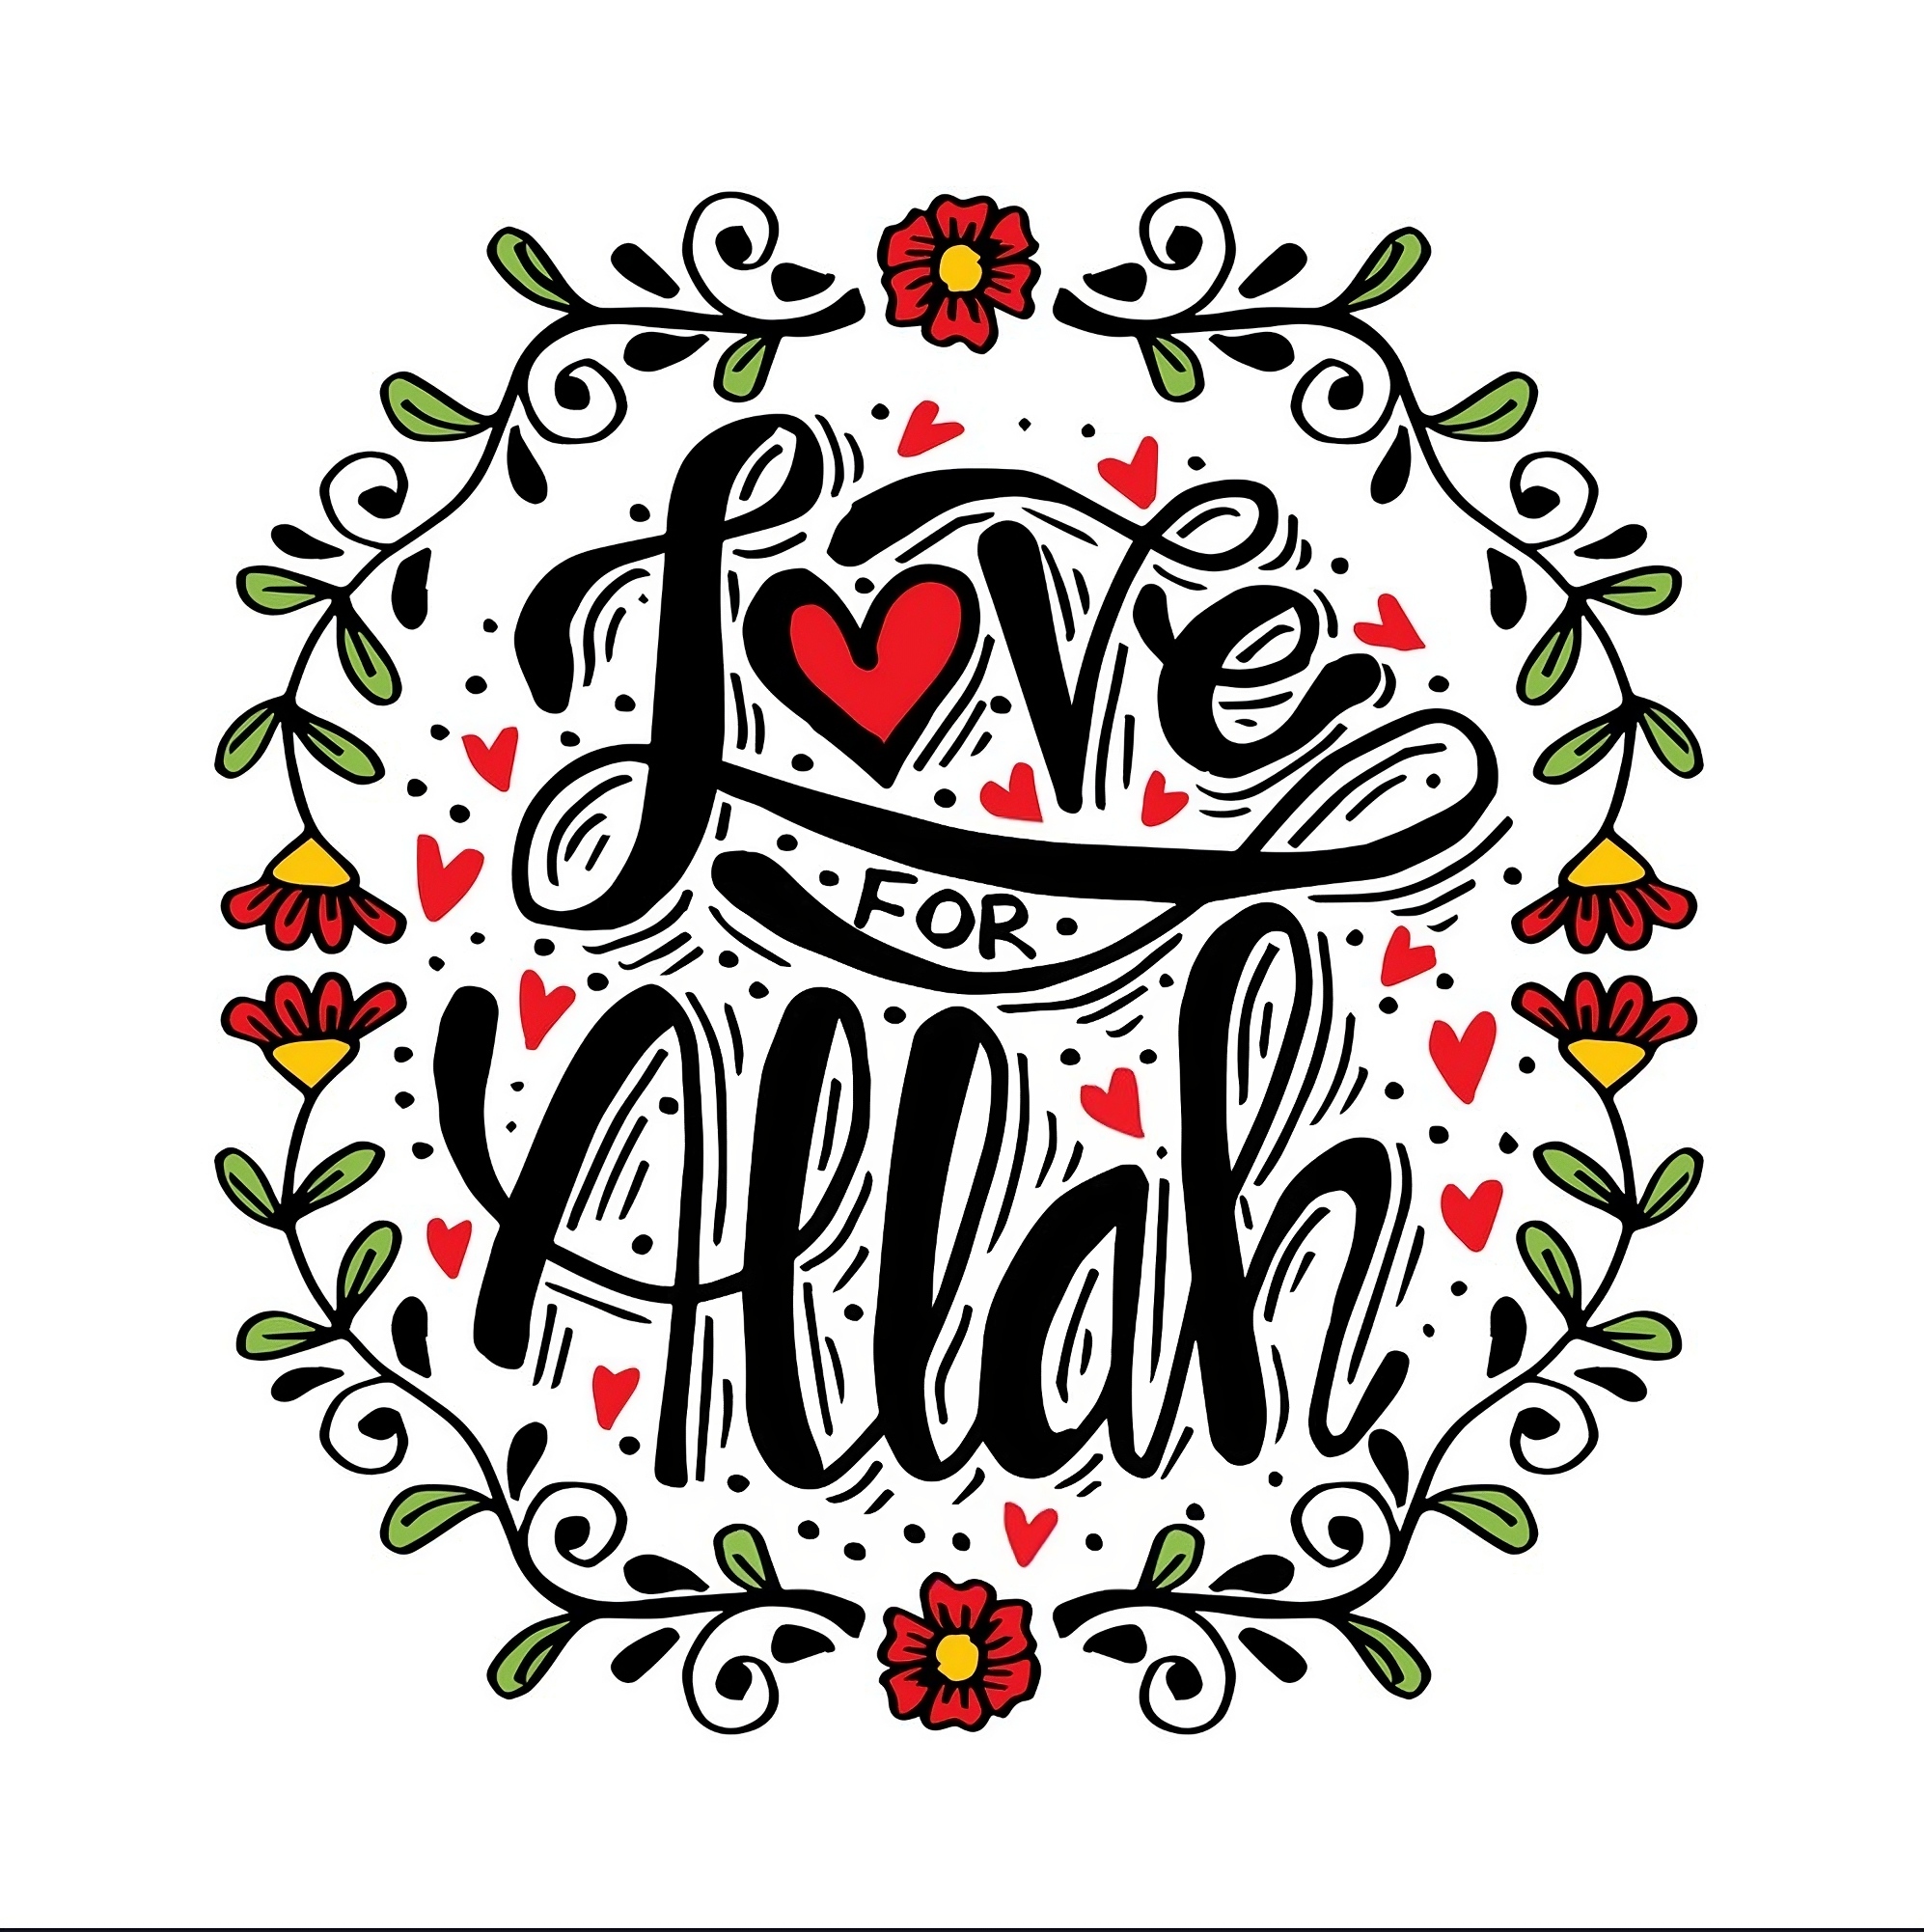 I Love Allah - love for allah